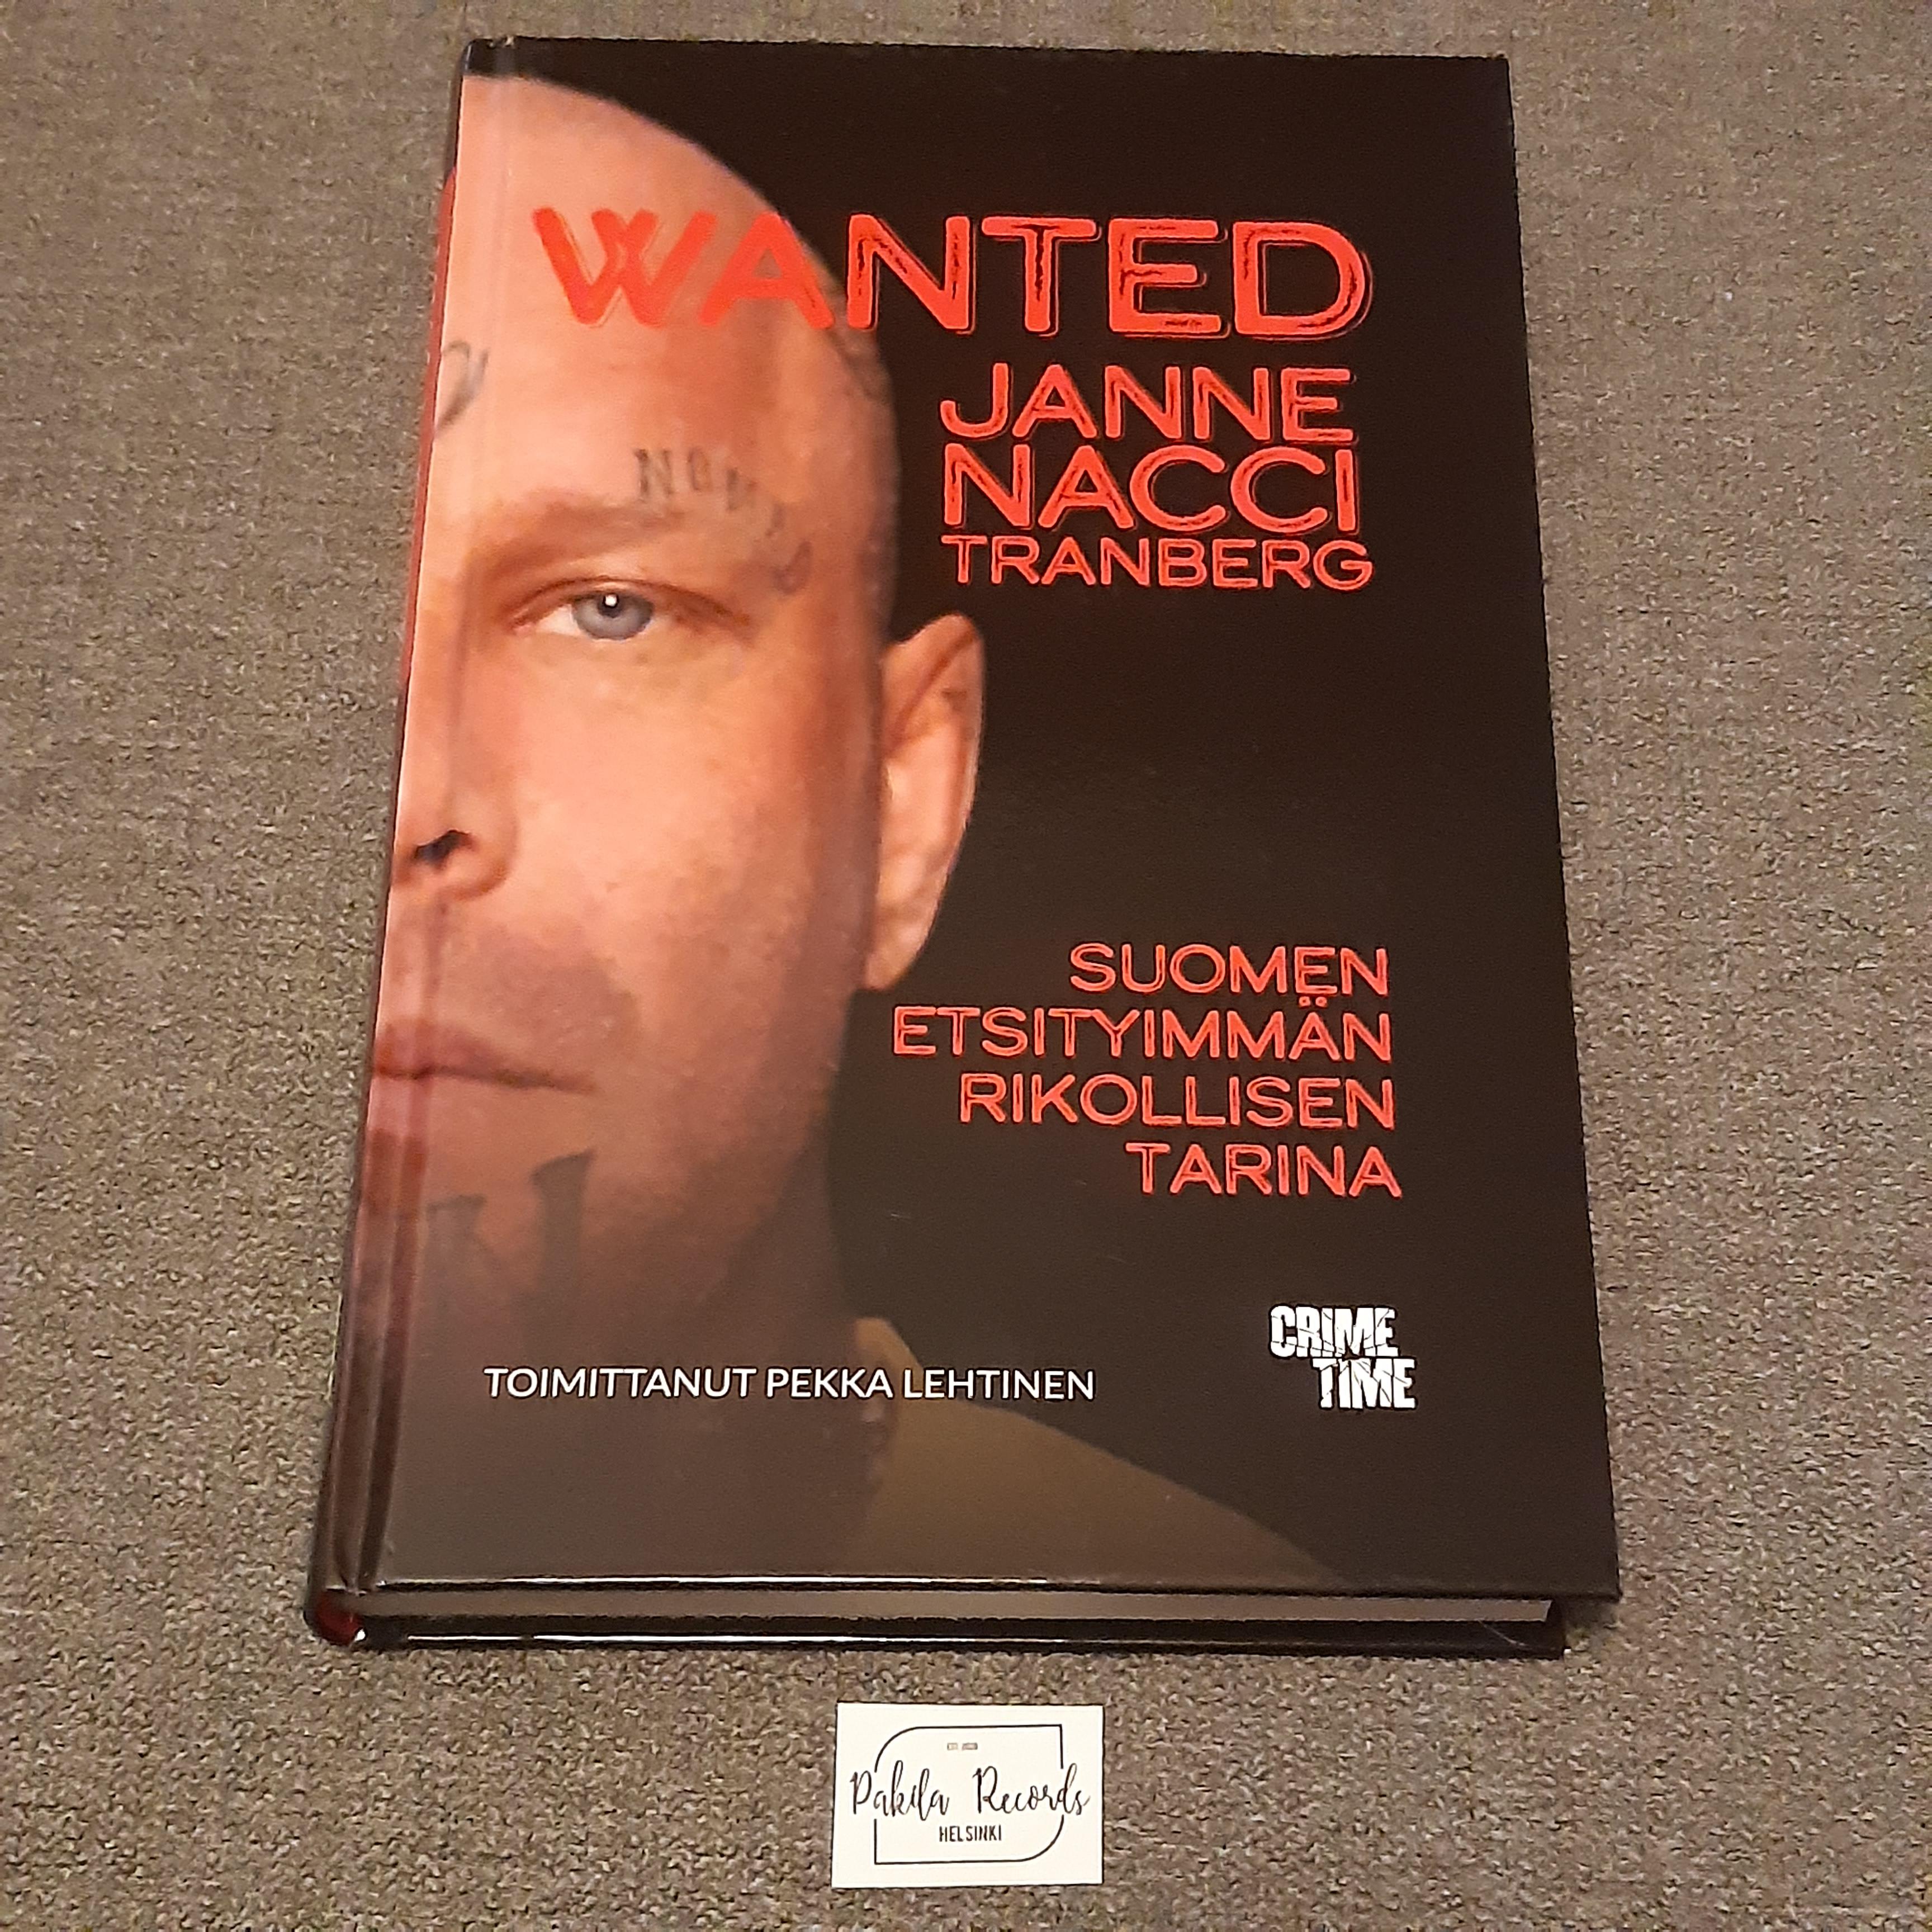 Wanted, Suomen etsityimmän rikollisen tarina - Pekka Lehtinen - Kirja (käytetty)